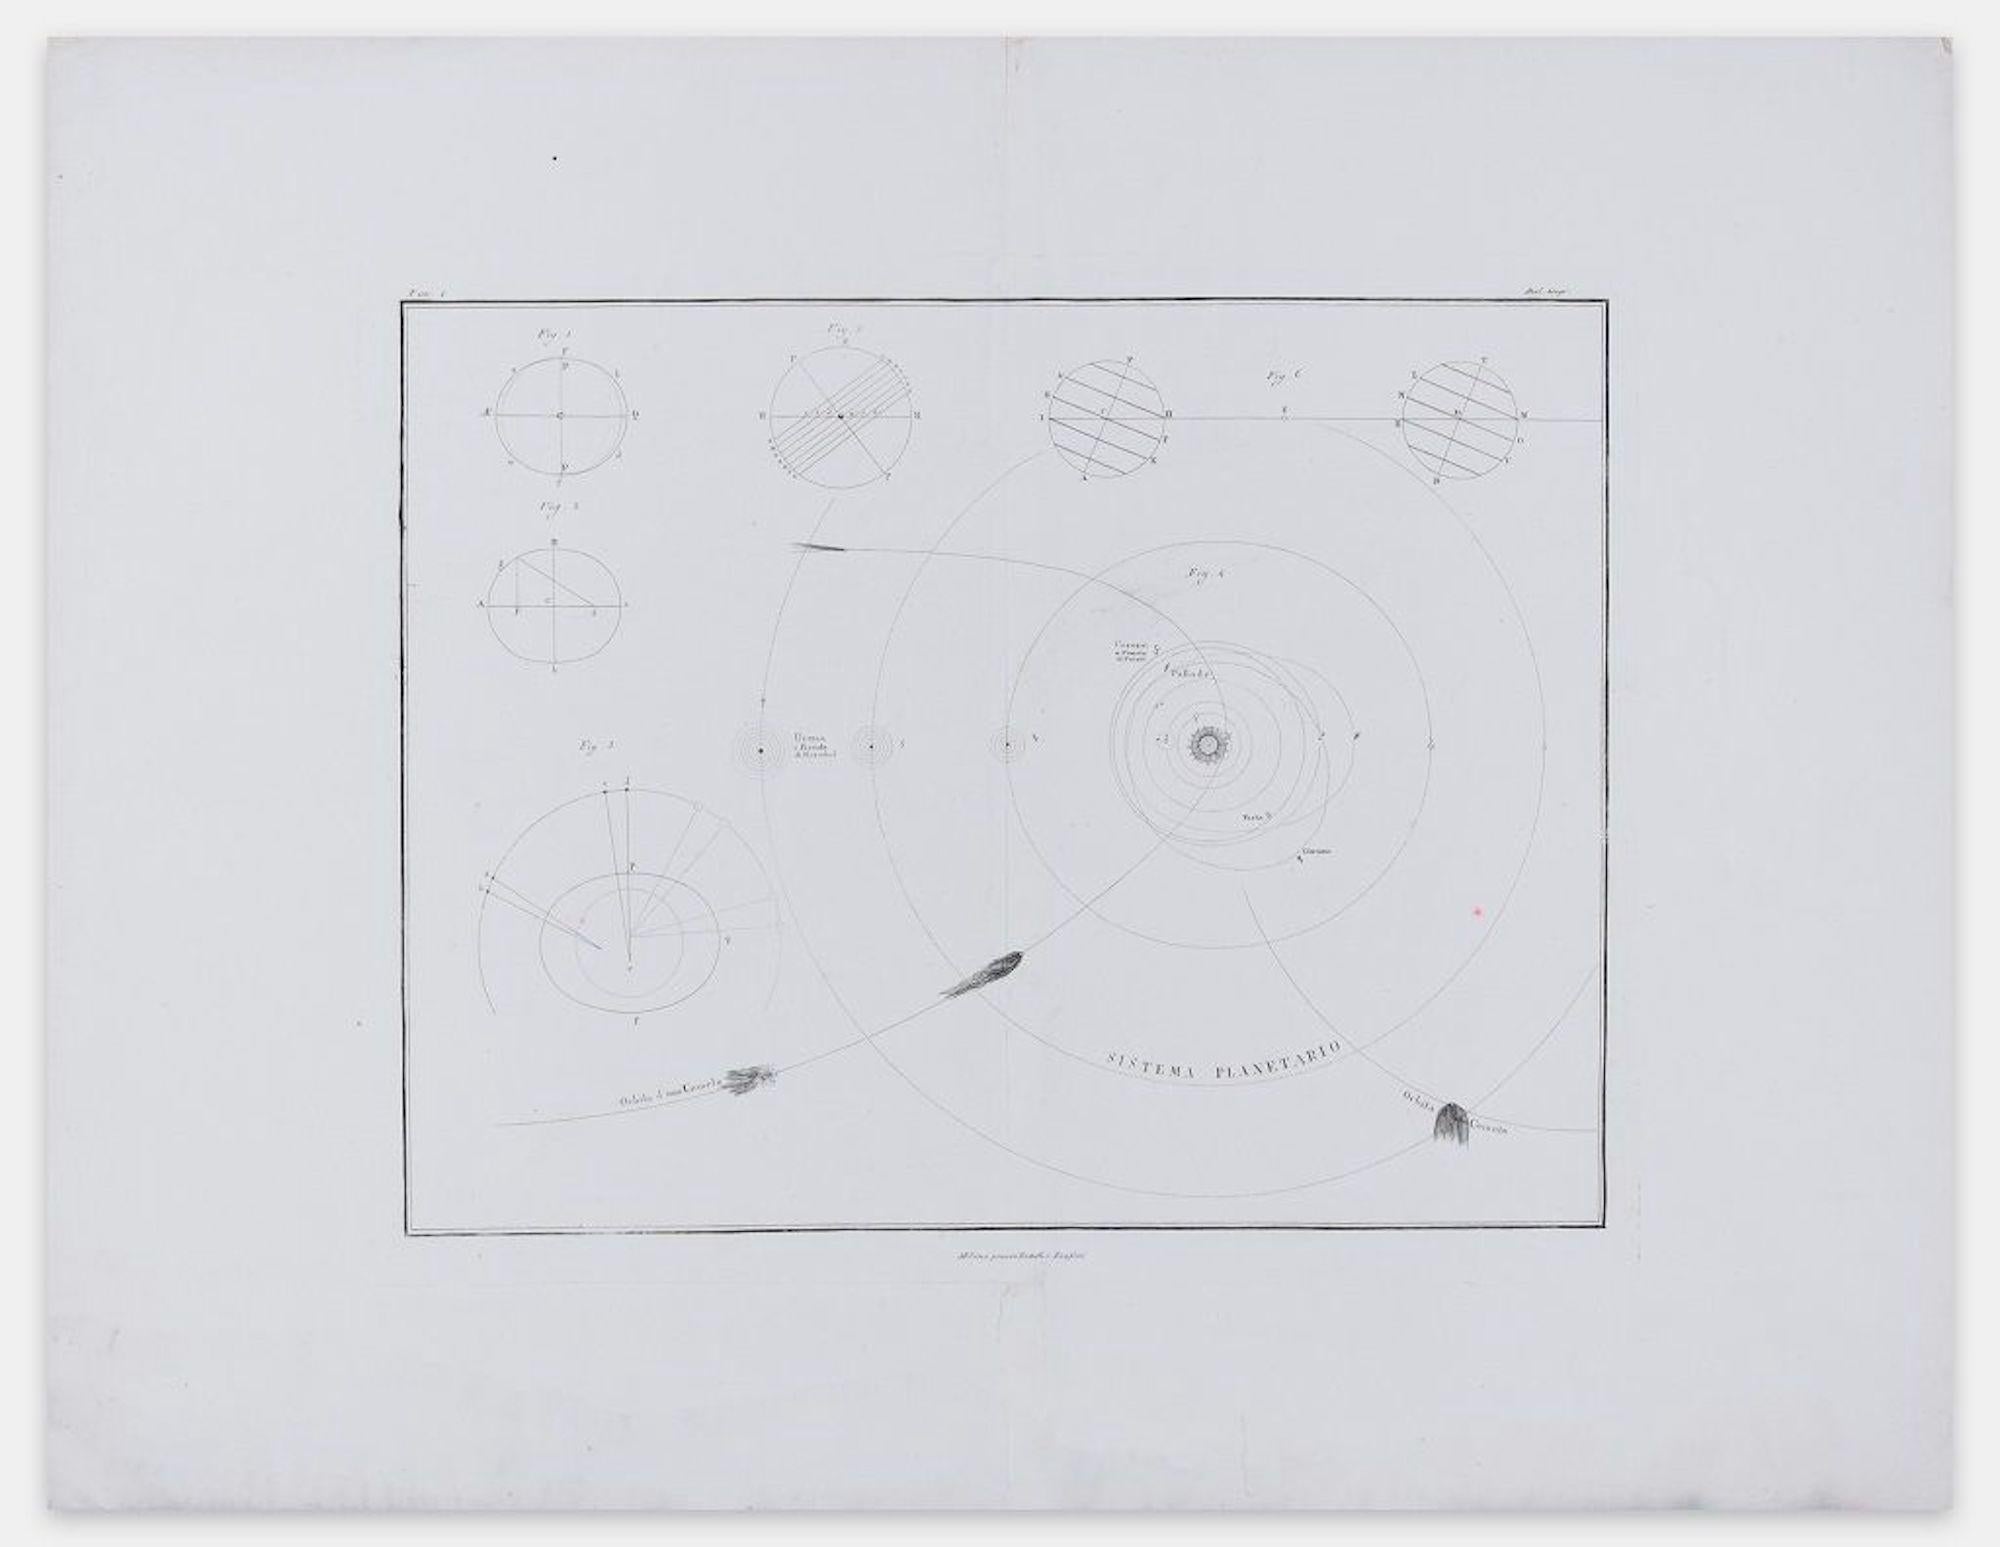 Planetary System - From Nuovo Atlante di Geografia Universale - 1820